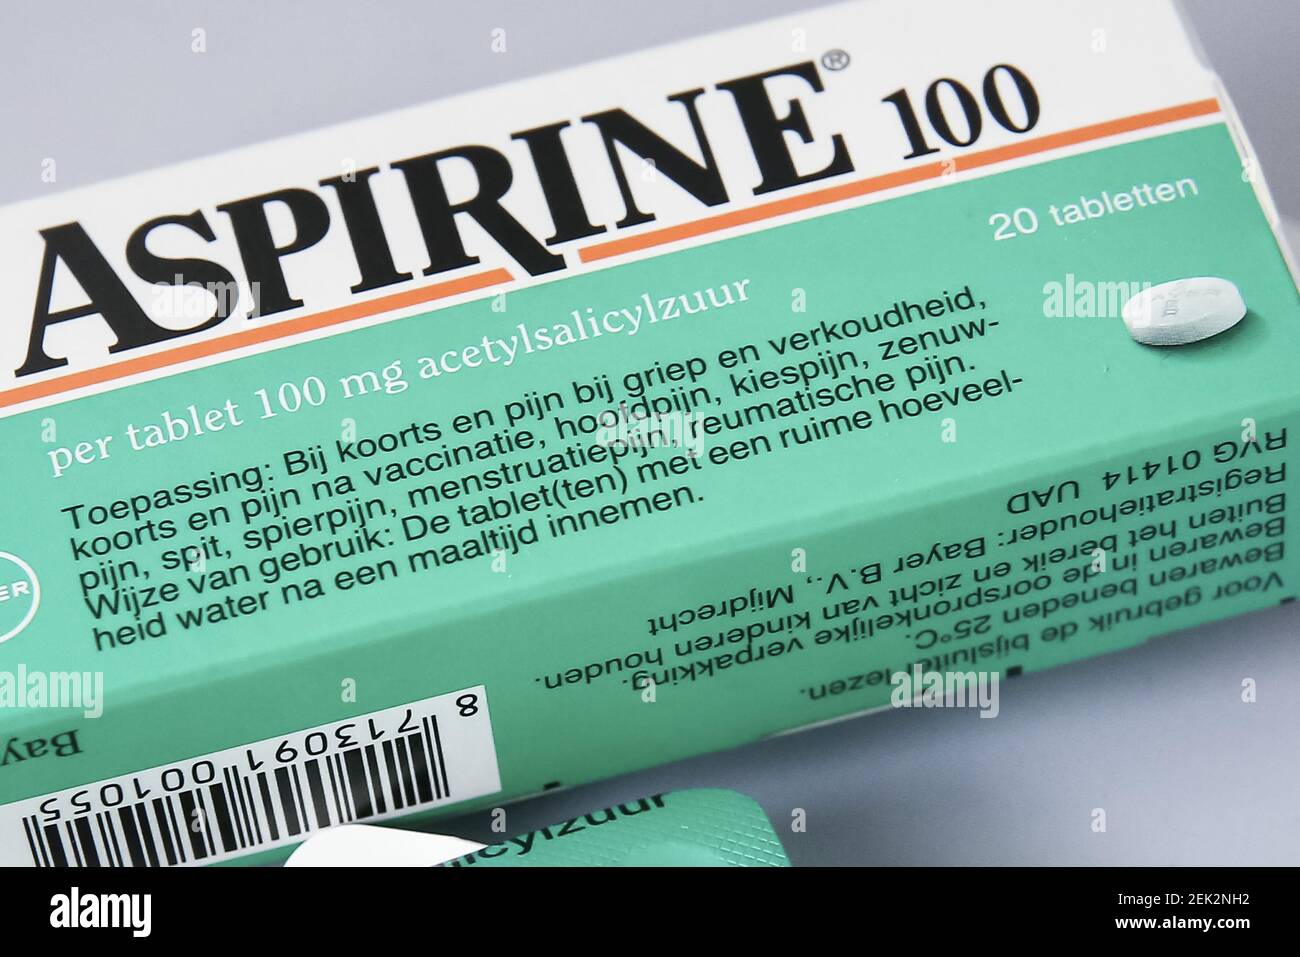 NIEUWEGEIN, 15-05-2020 , Dutchnews, aspirin compresse l'acido  acetilsalicilico è un farmaco che ha un effetto analgesico,  anticevera-riducente e anti-infiammatorio. Il farmaco era il più ampiamente  usato antidolorifici sotto il nome di marca